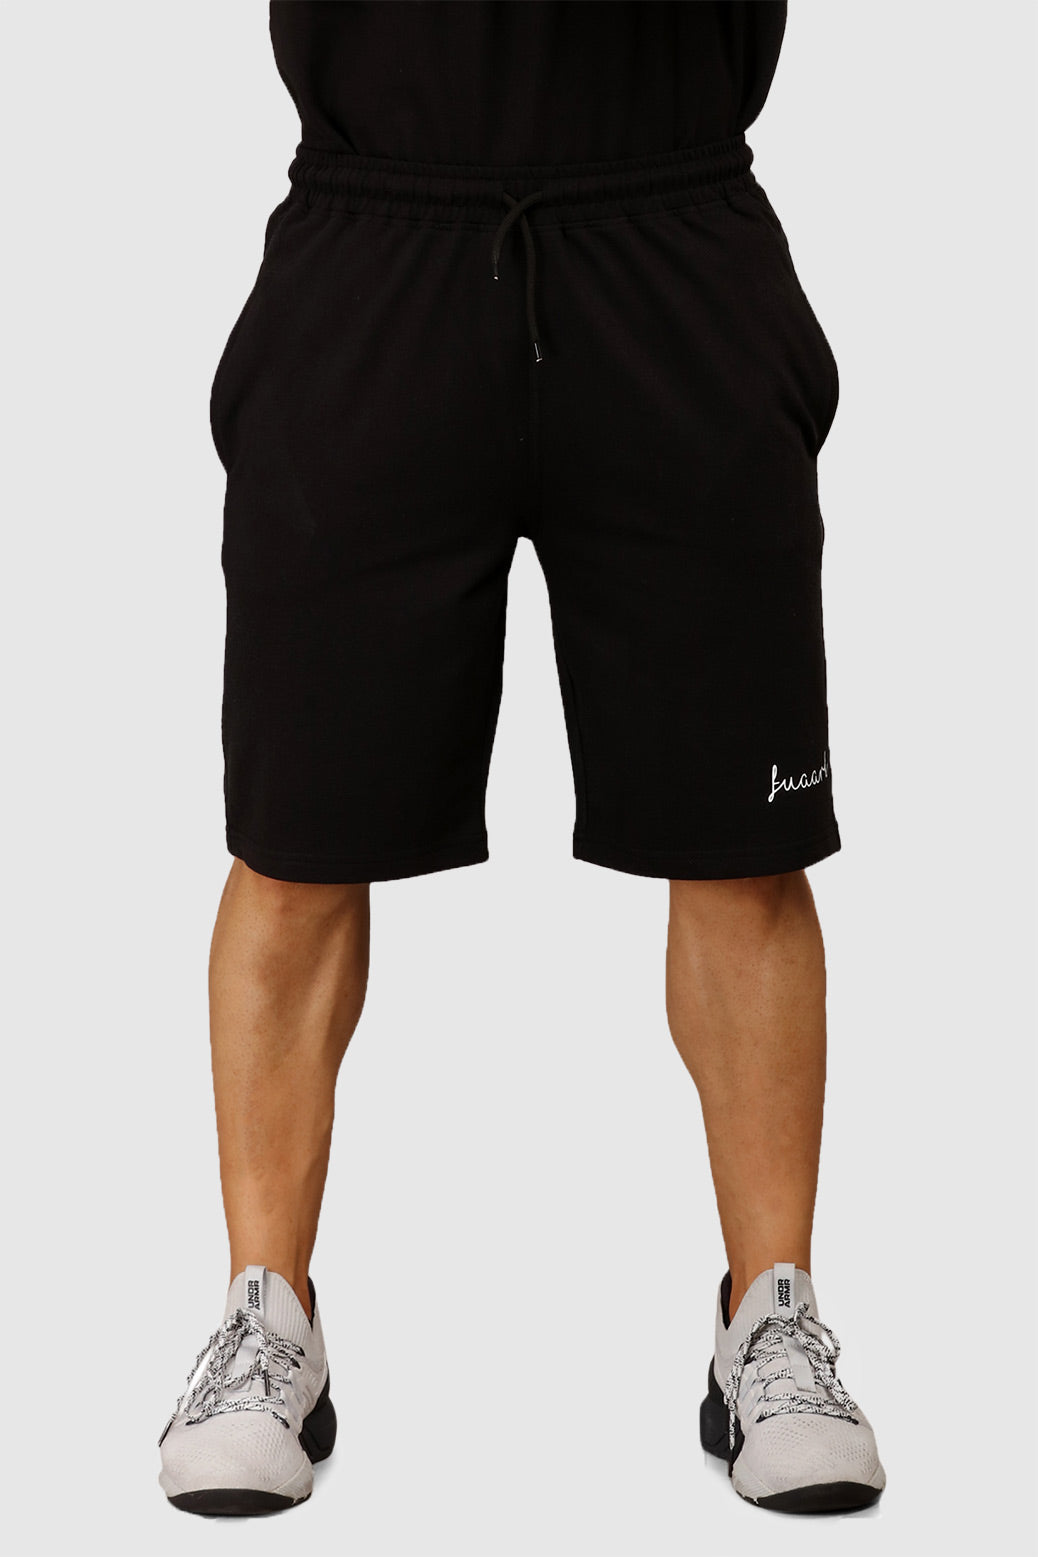 Oversized Shorts Black